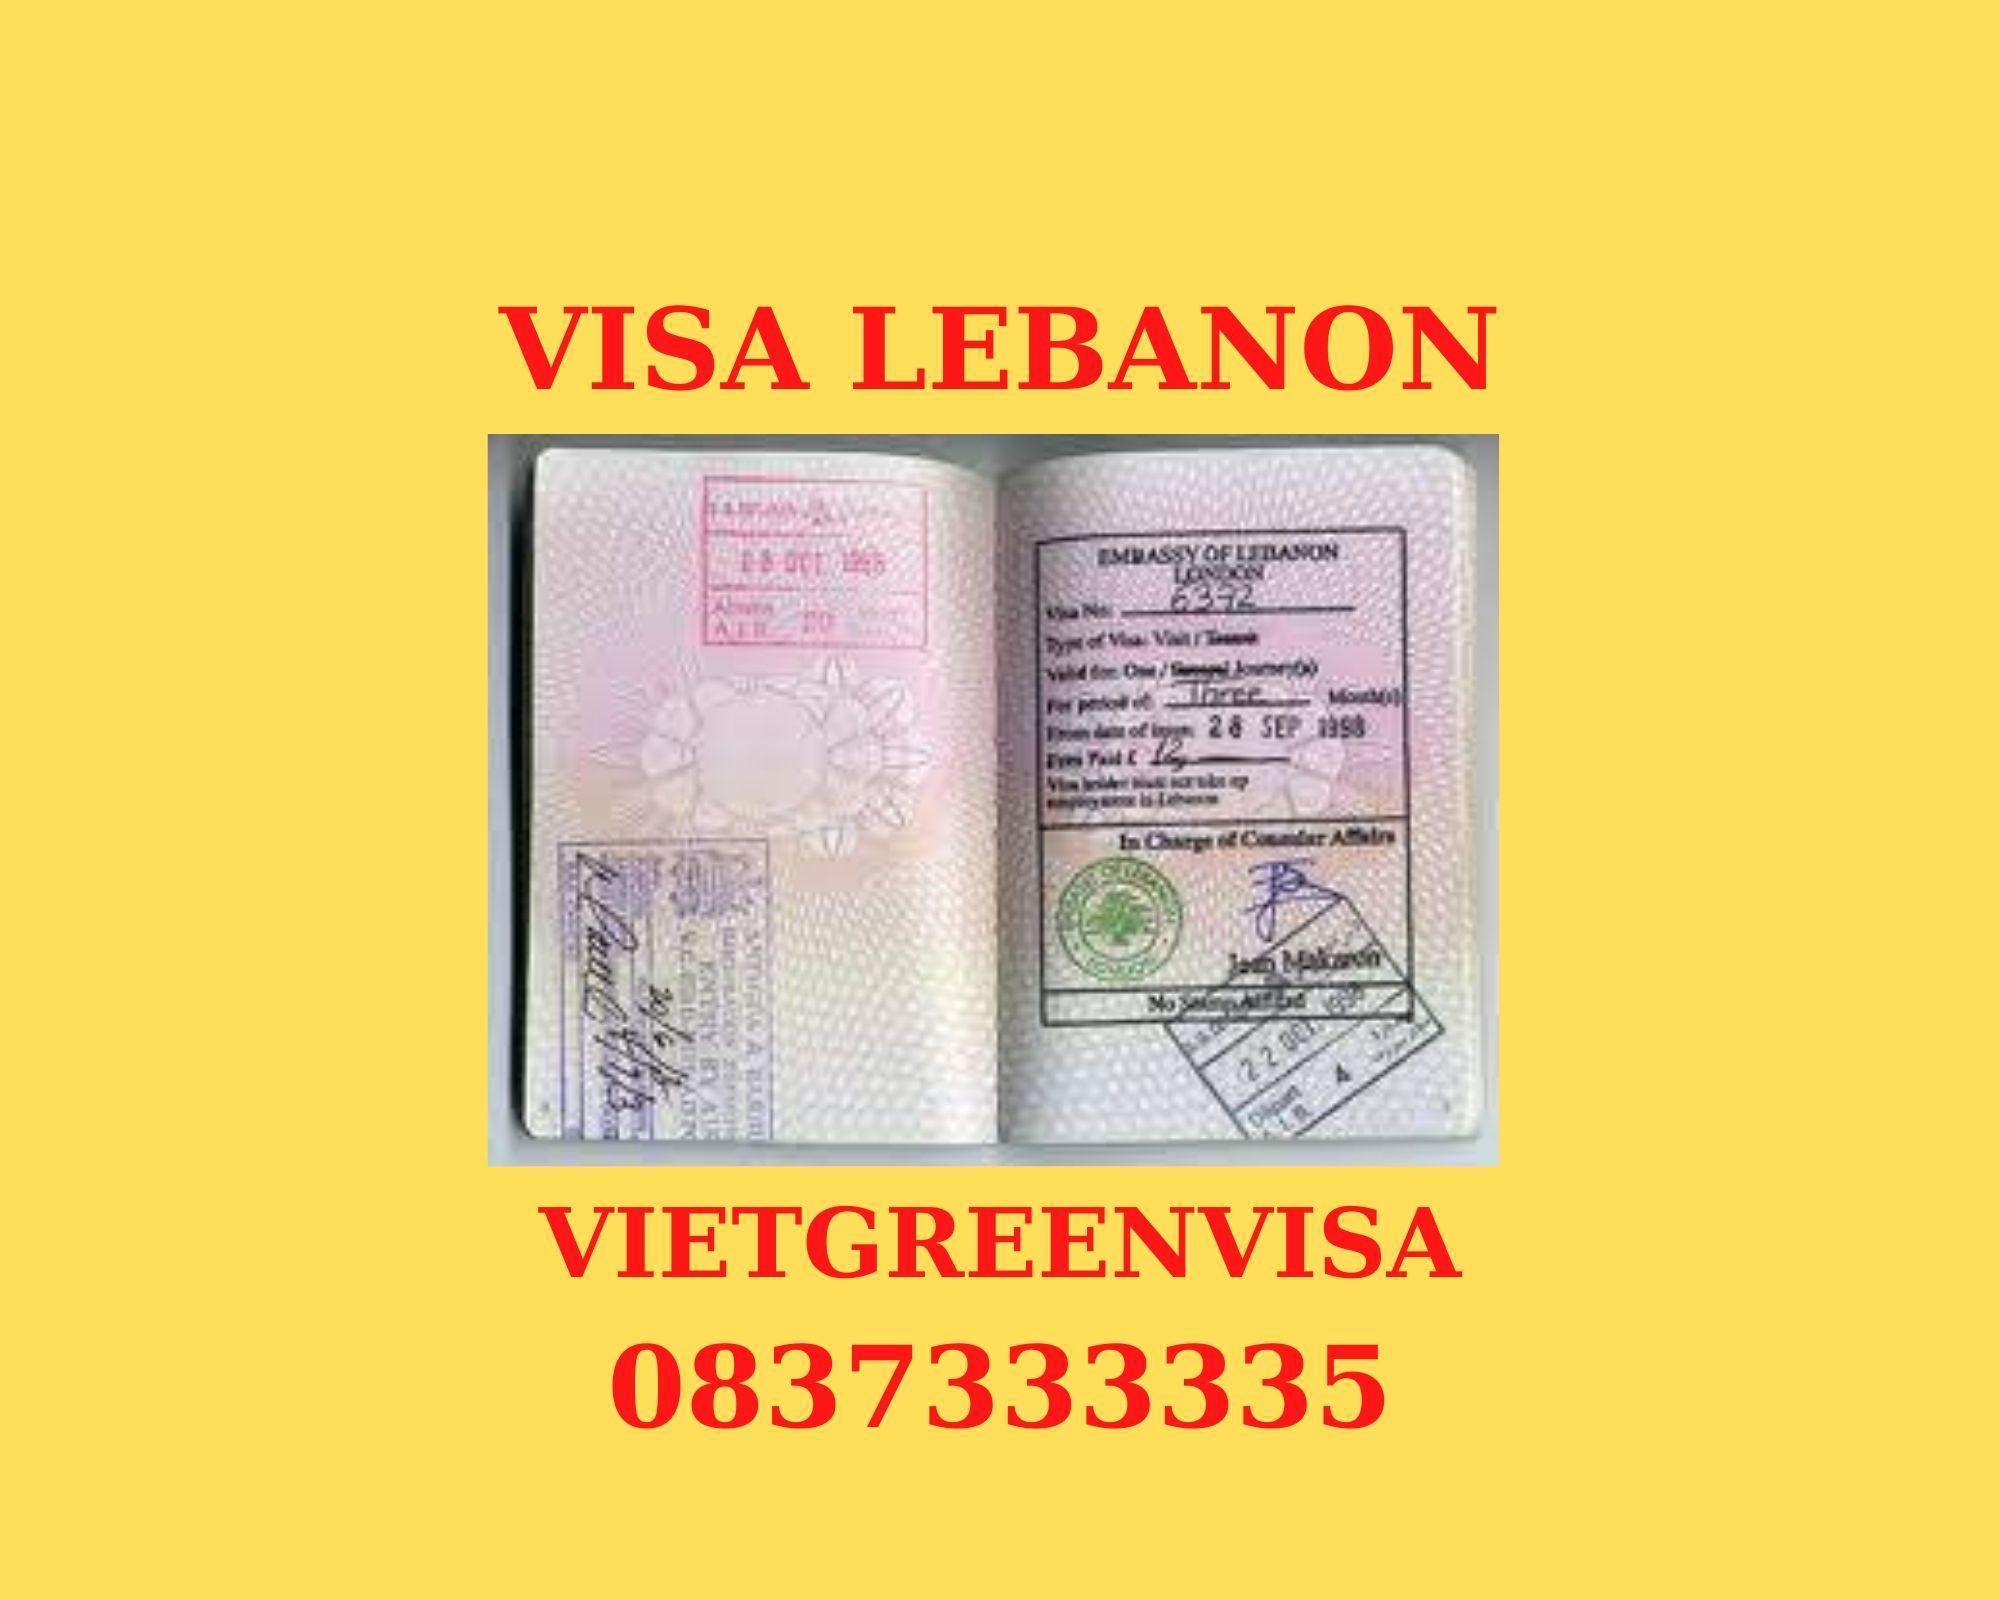 Dịch vụ xin visa Lebanon lưu trú 30 ngày tại Hà Nội, TP HCM